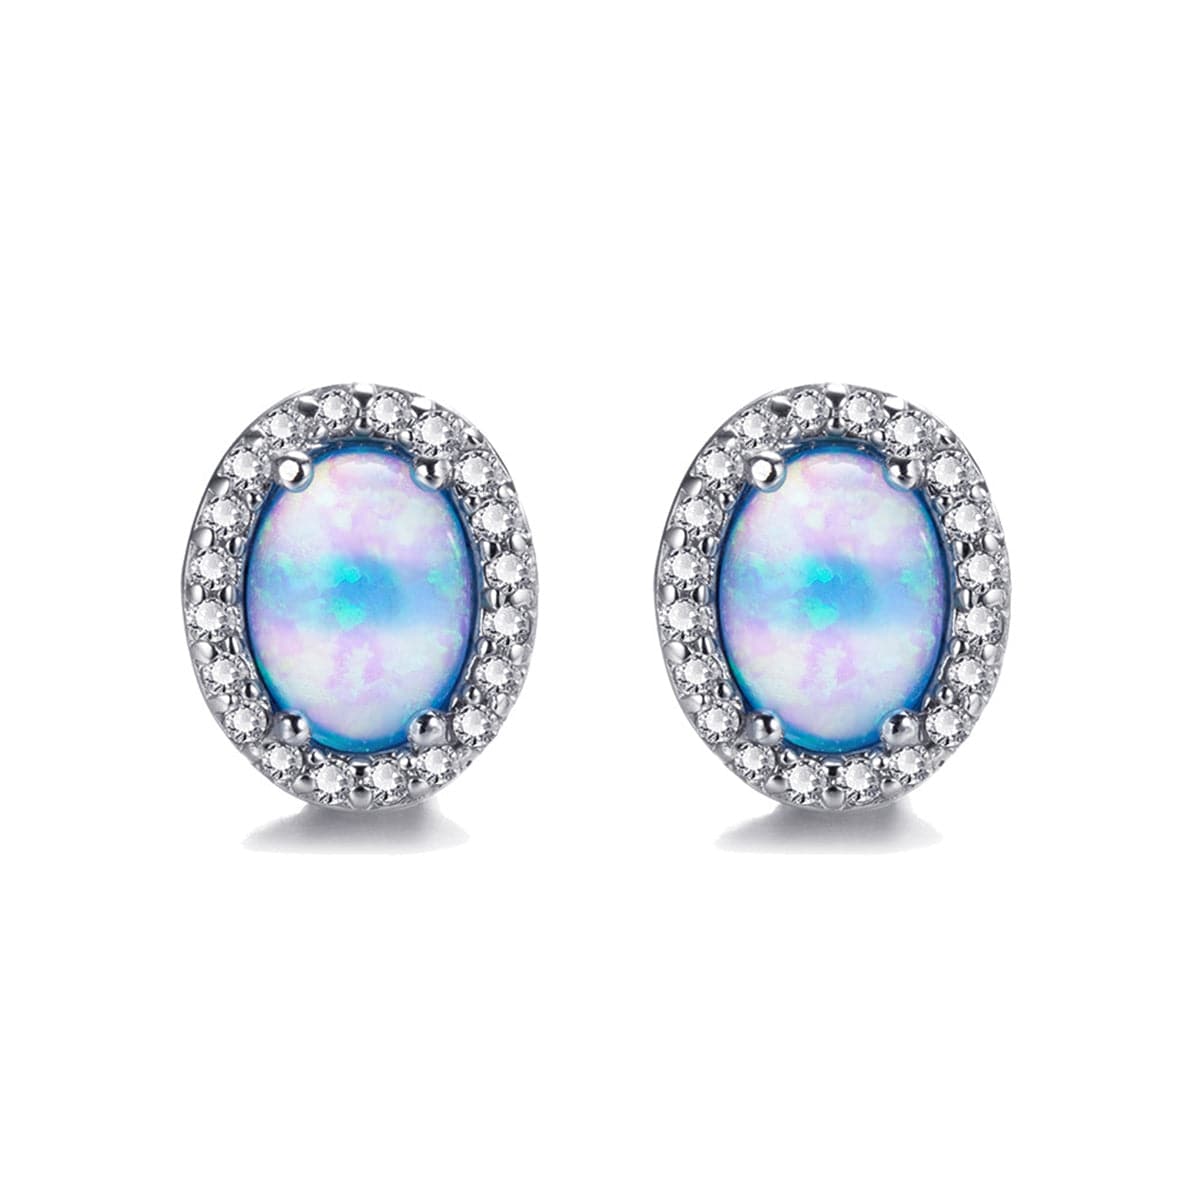 Blue Opal & cubic zirconia Oval Halo Stud Earrings - streetregion